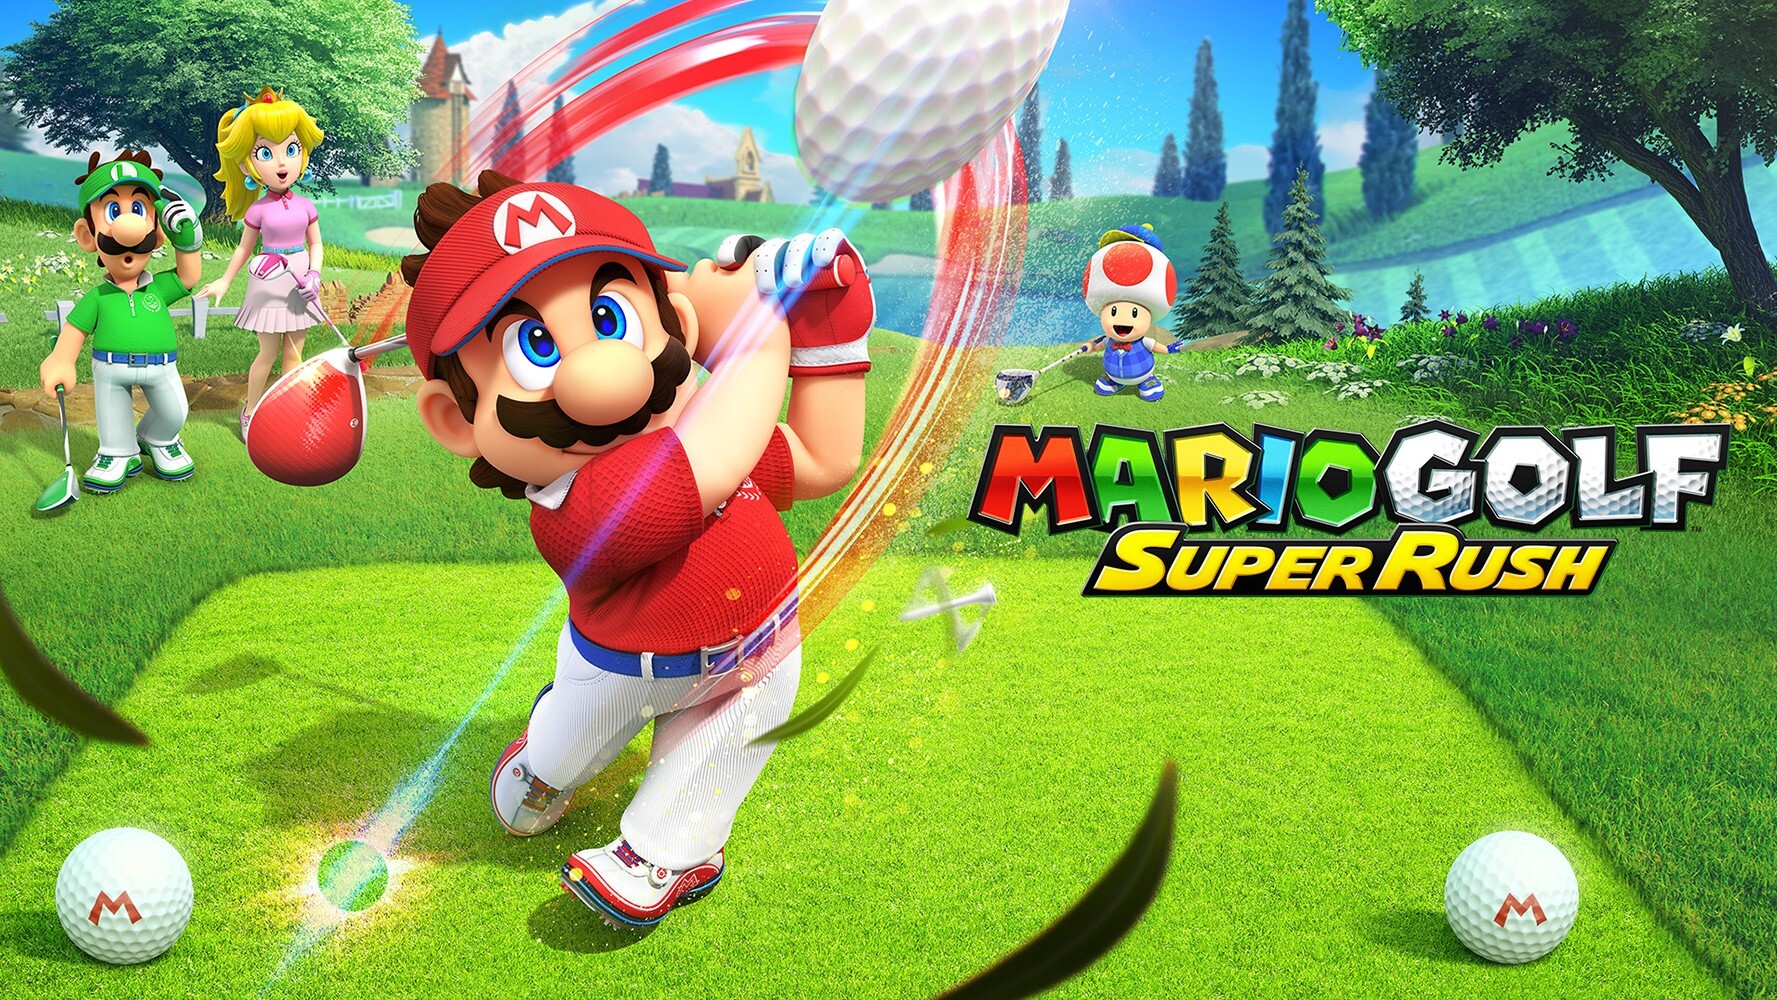 Mario golf super rush 1